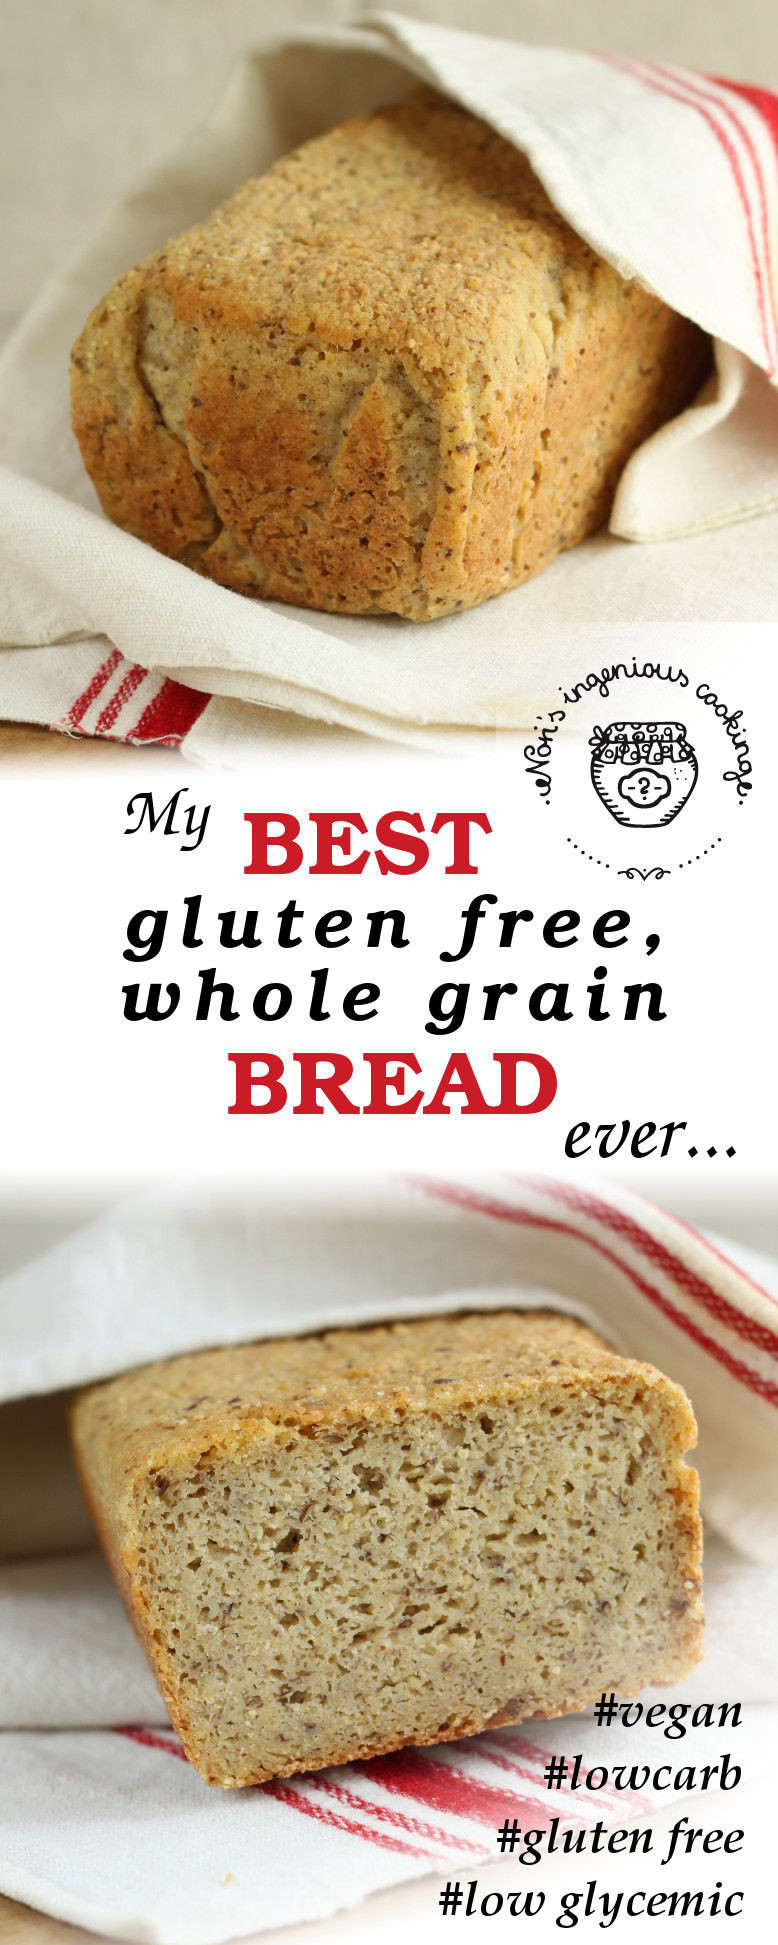 Best Whole Grain Bread
 My best gluten free whole grain bread ever vegan